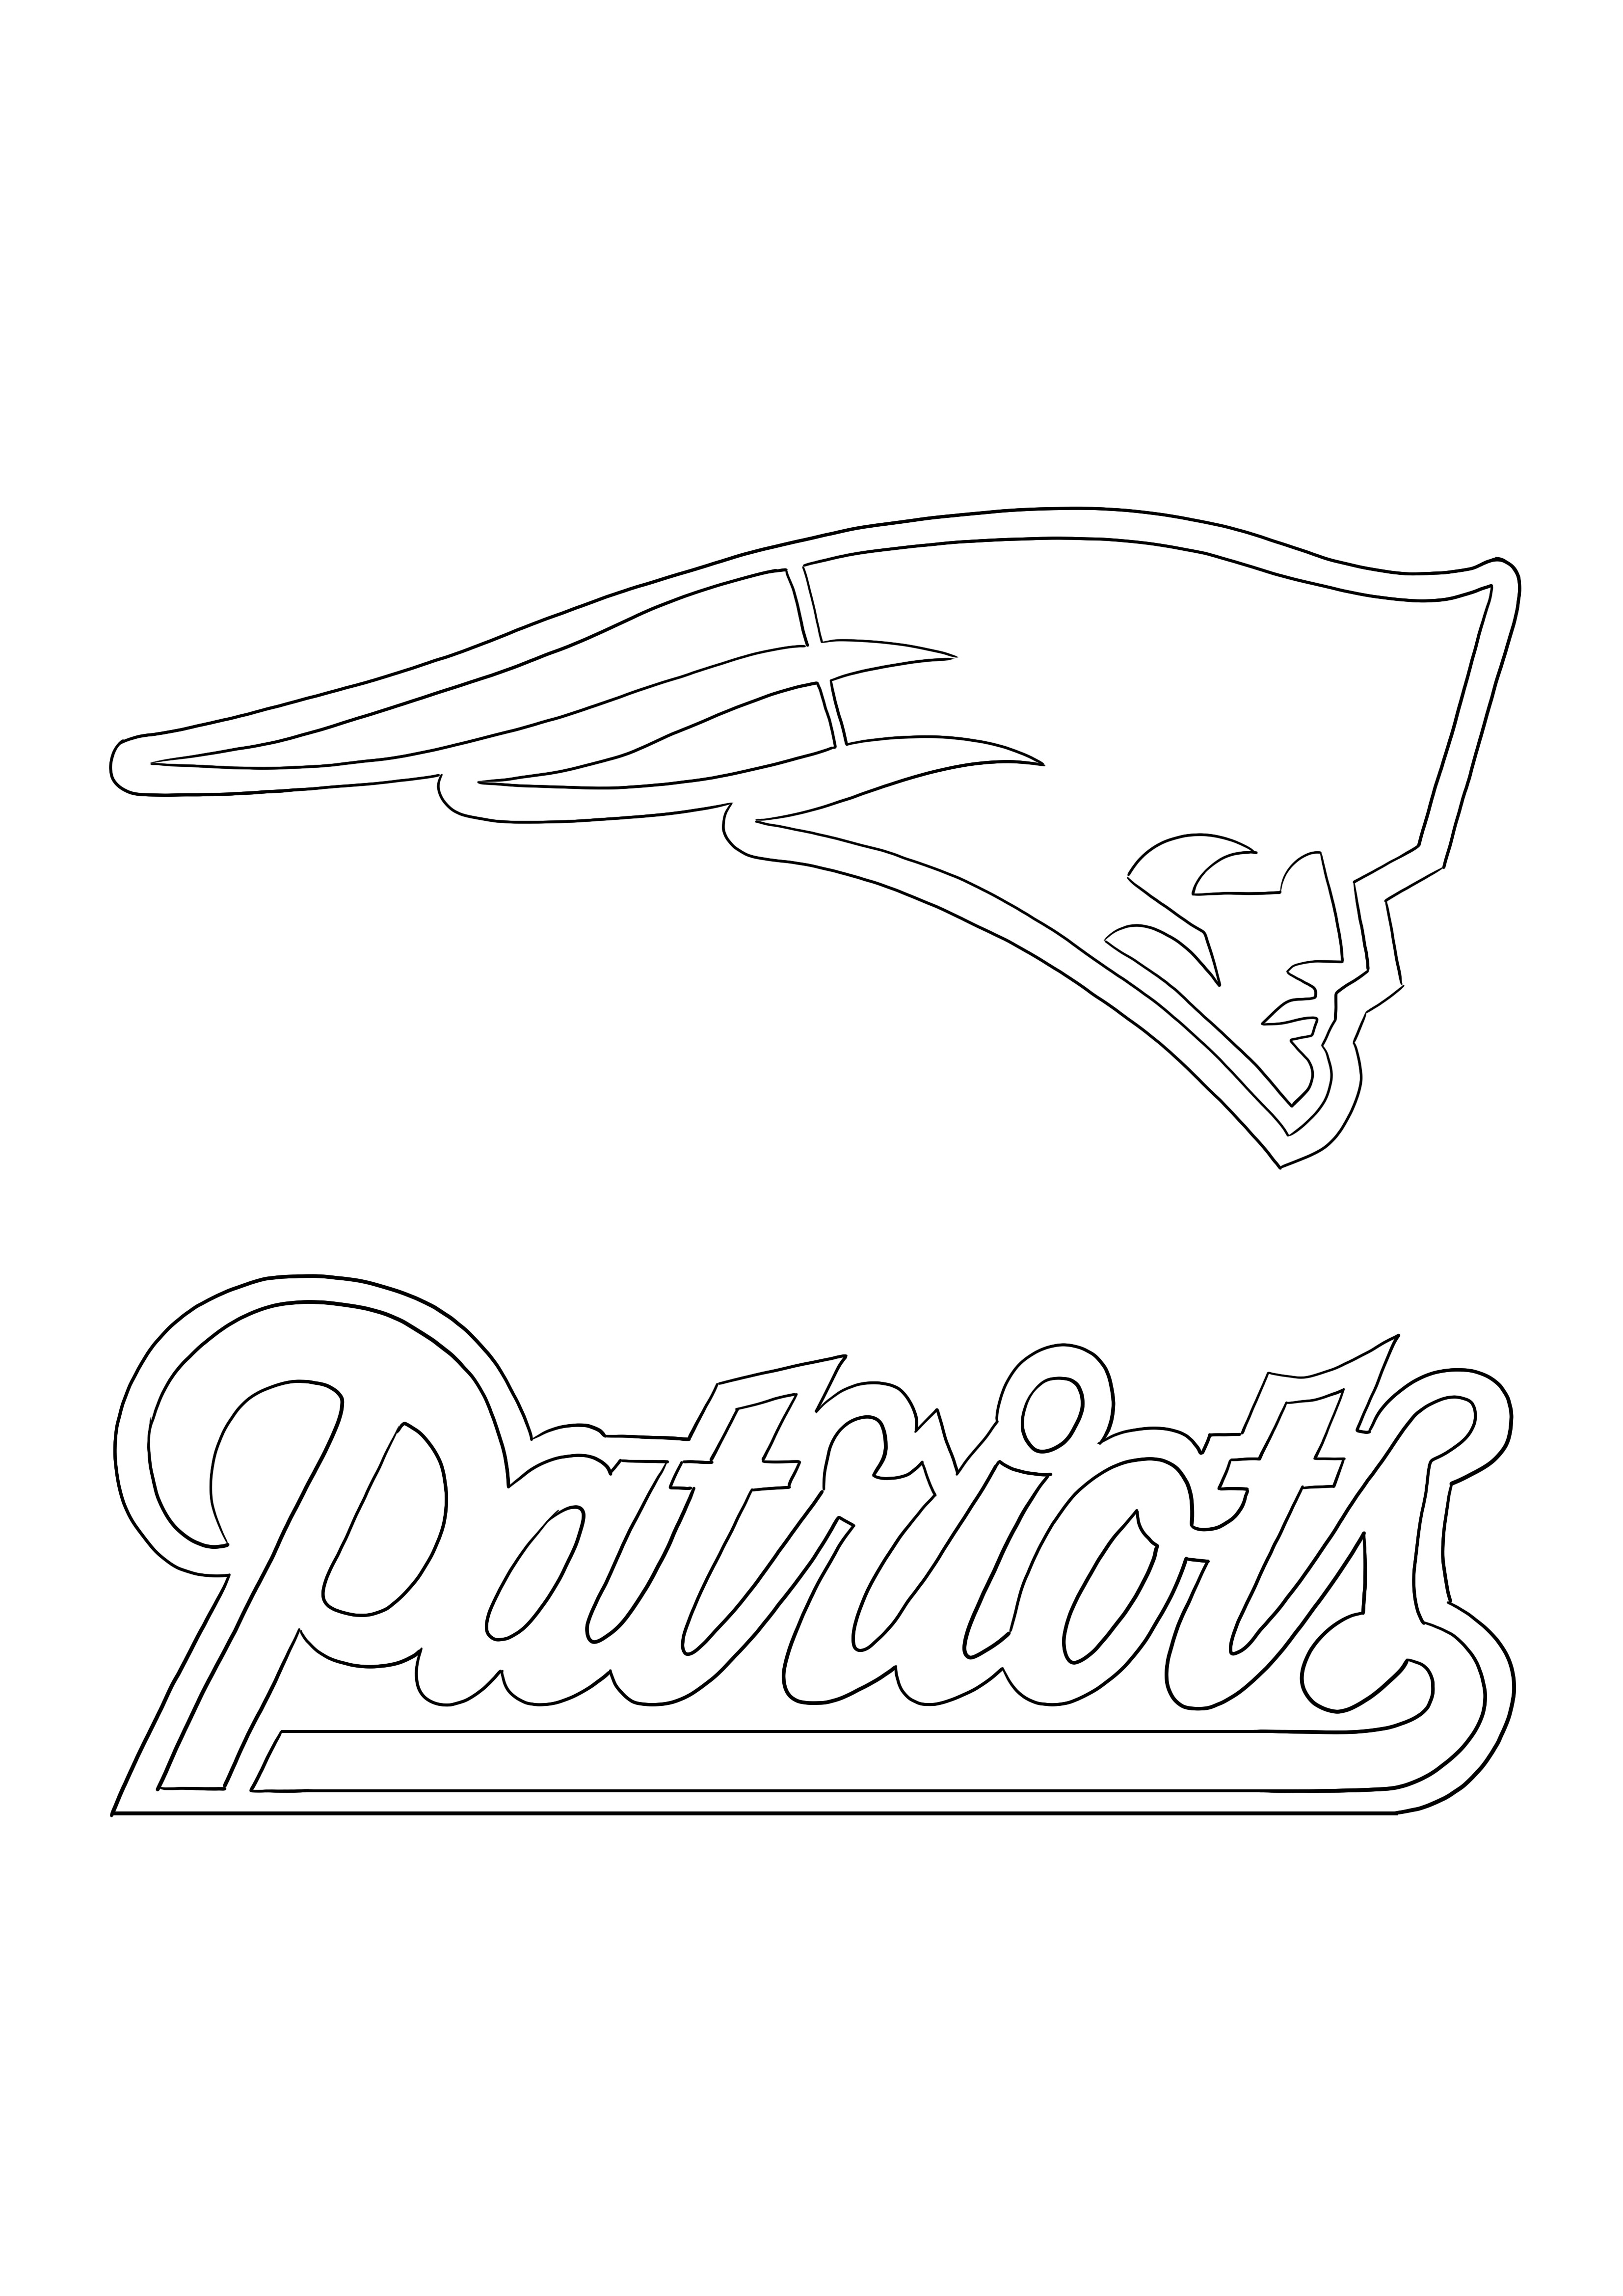 Patriots logo boyama ve ücretsiz indirme